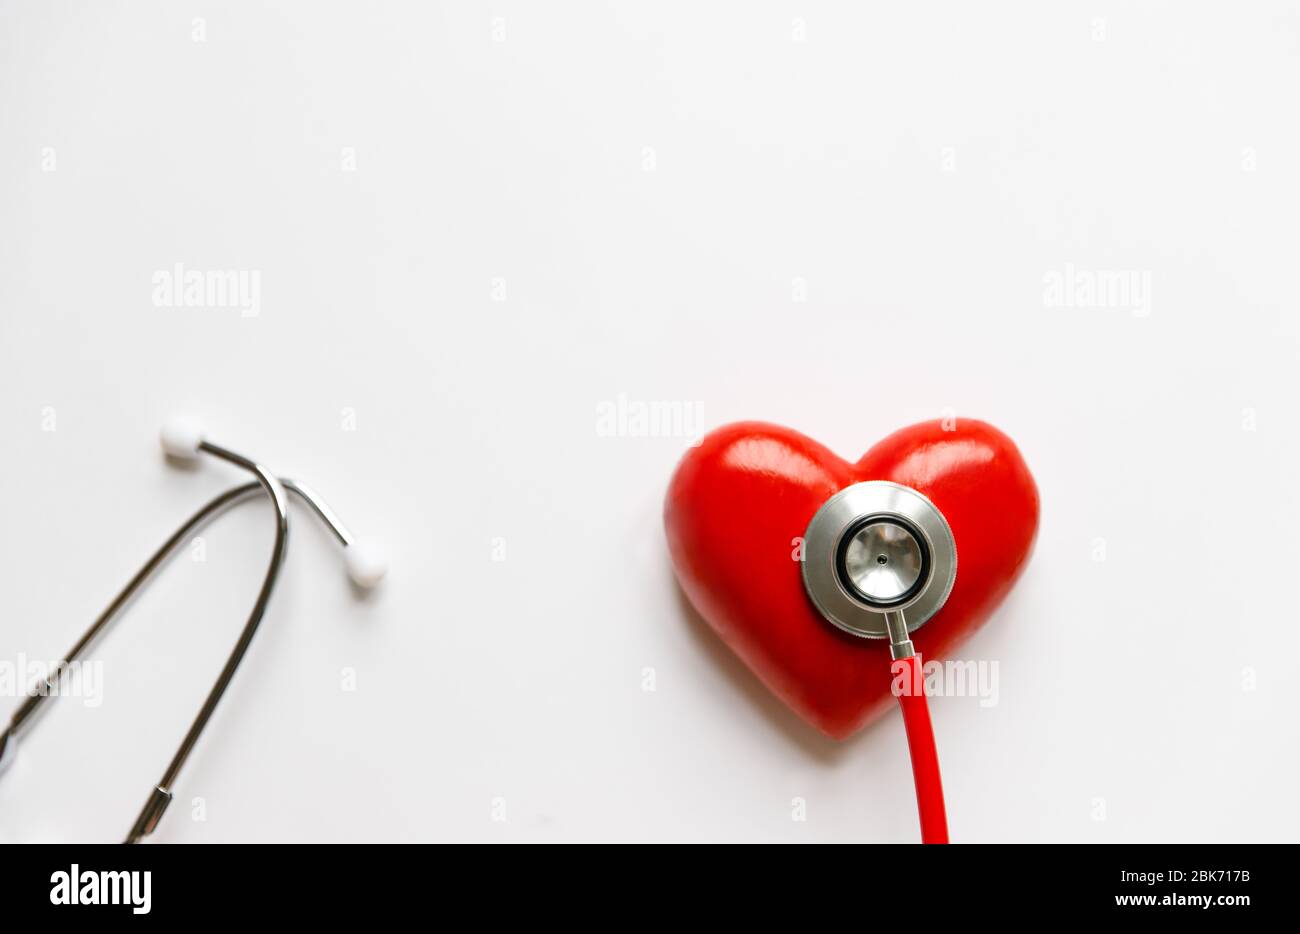 Nahaufnahme des Stethoskops auf dem roten Herzen - medizinisches Diagnosegerät für Auskultation (Hören) der Töne, die vom Herzen kommen, Bronchien. Isoliert auf Whi Stockfoto